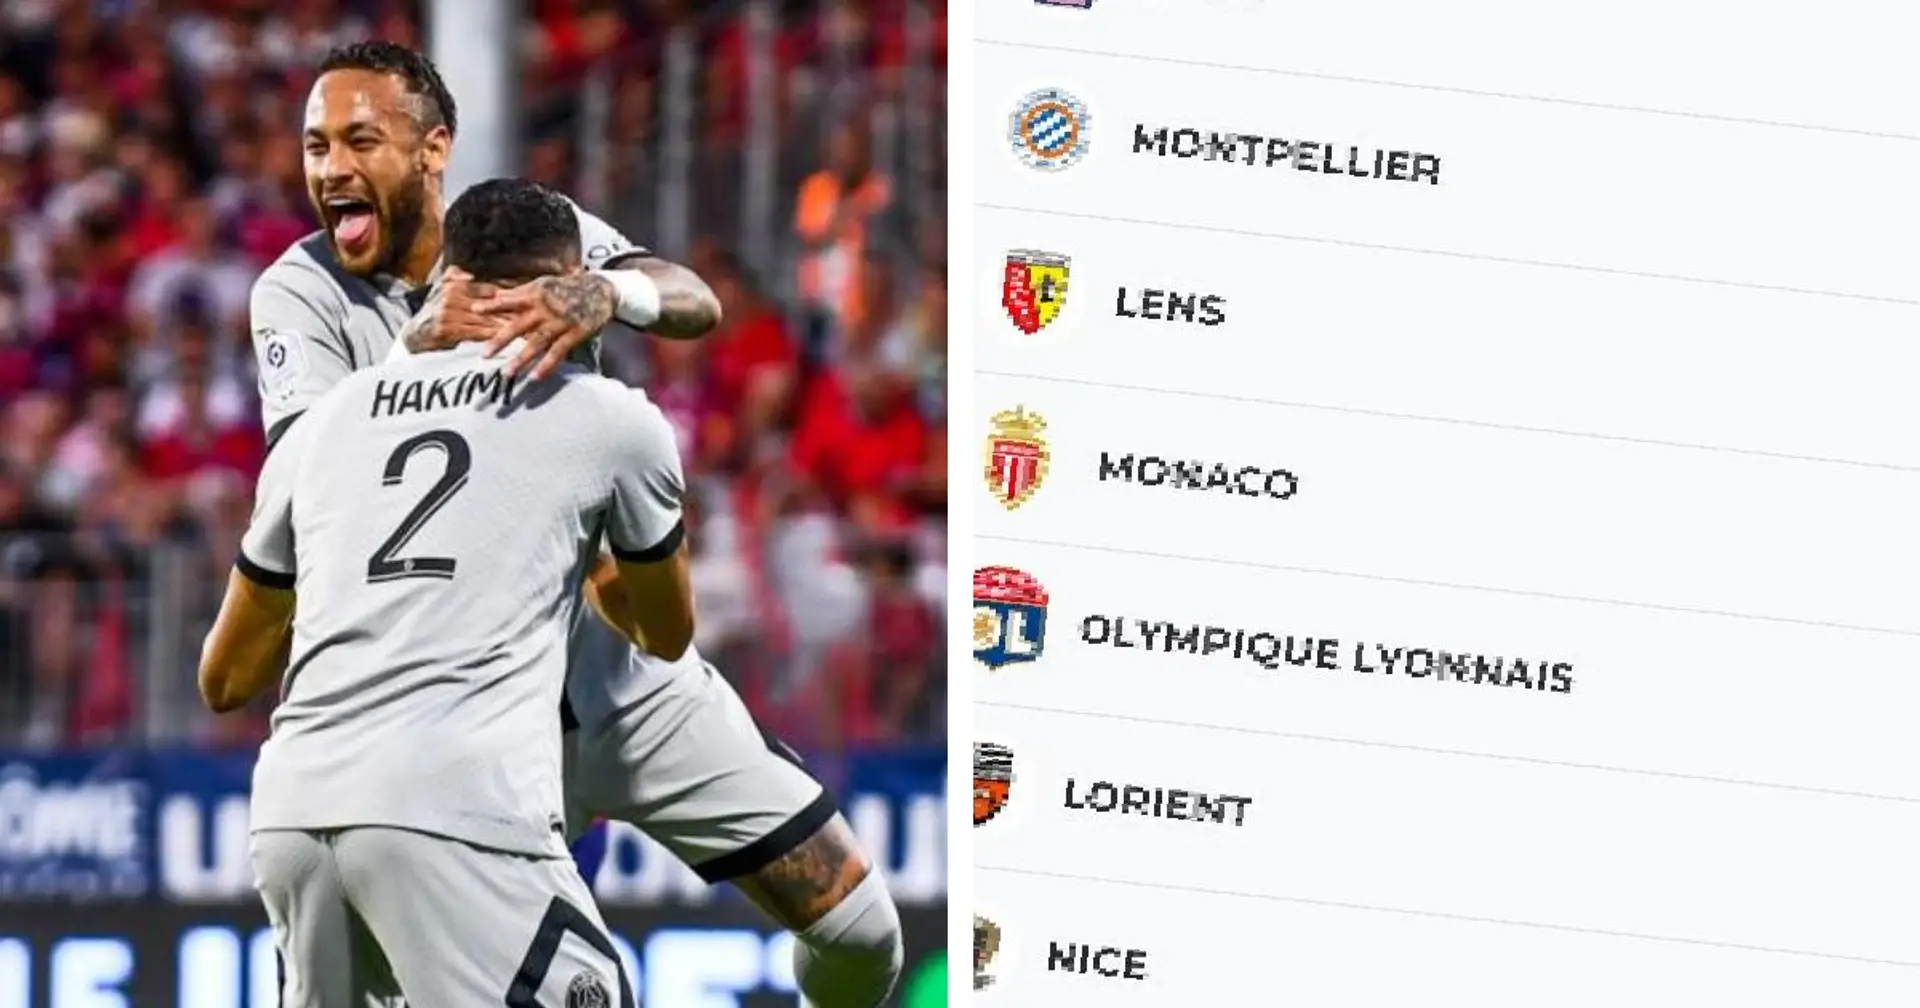 Le PSG en tête de la Ligue 1 - classement et résultats détaillés après la première journée